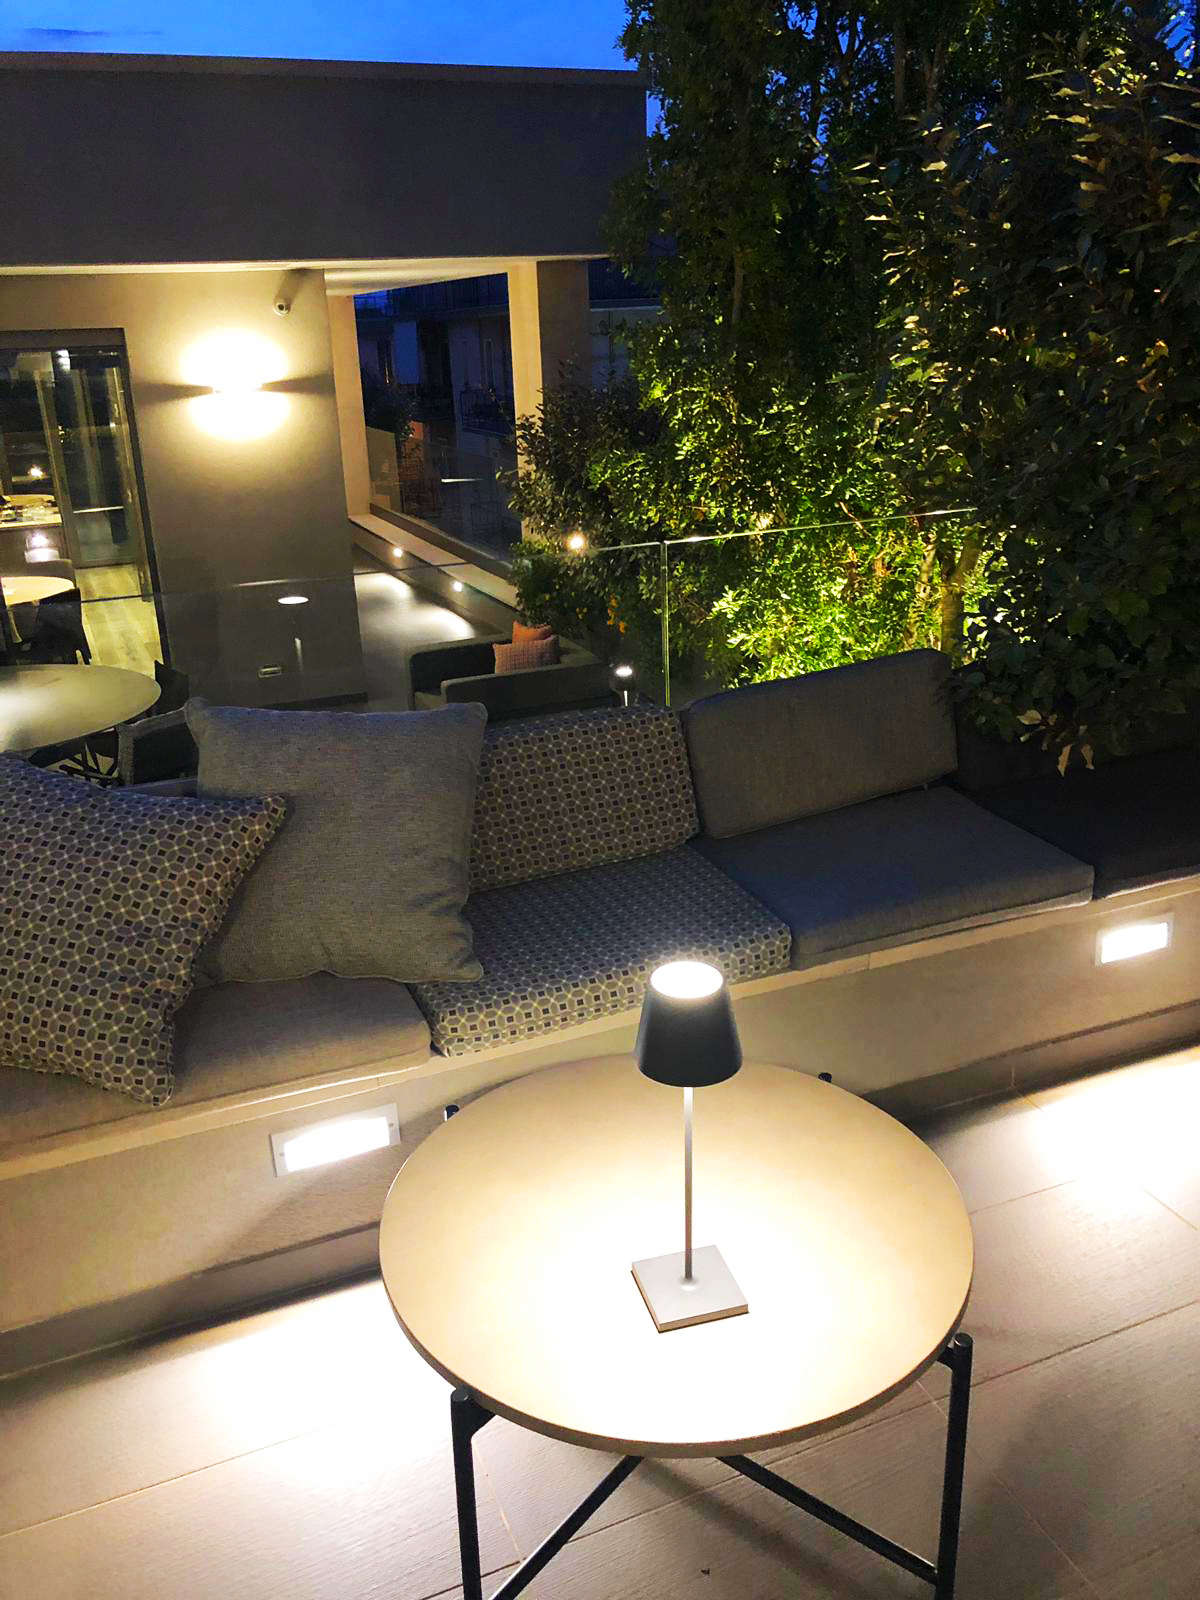 Dettagli Illuminazione area esterna in villa privata a Bari (BA)